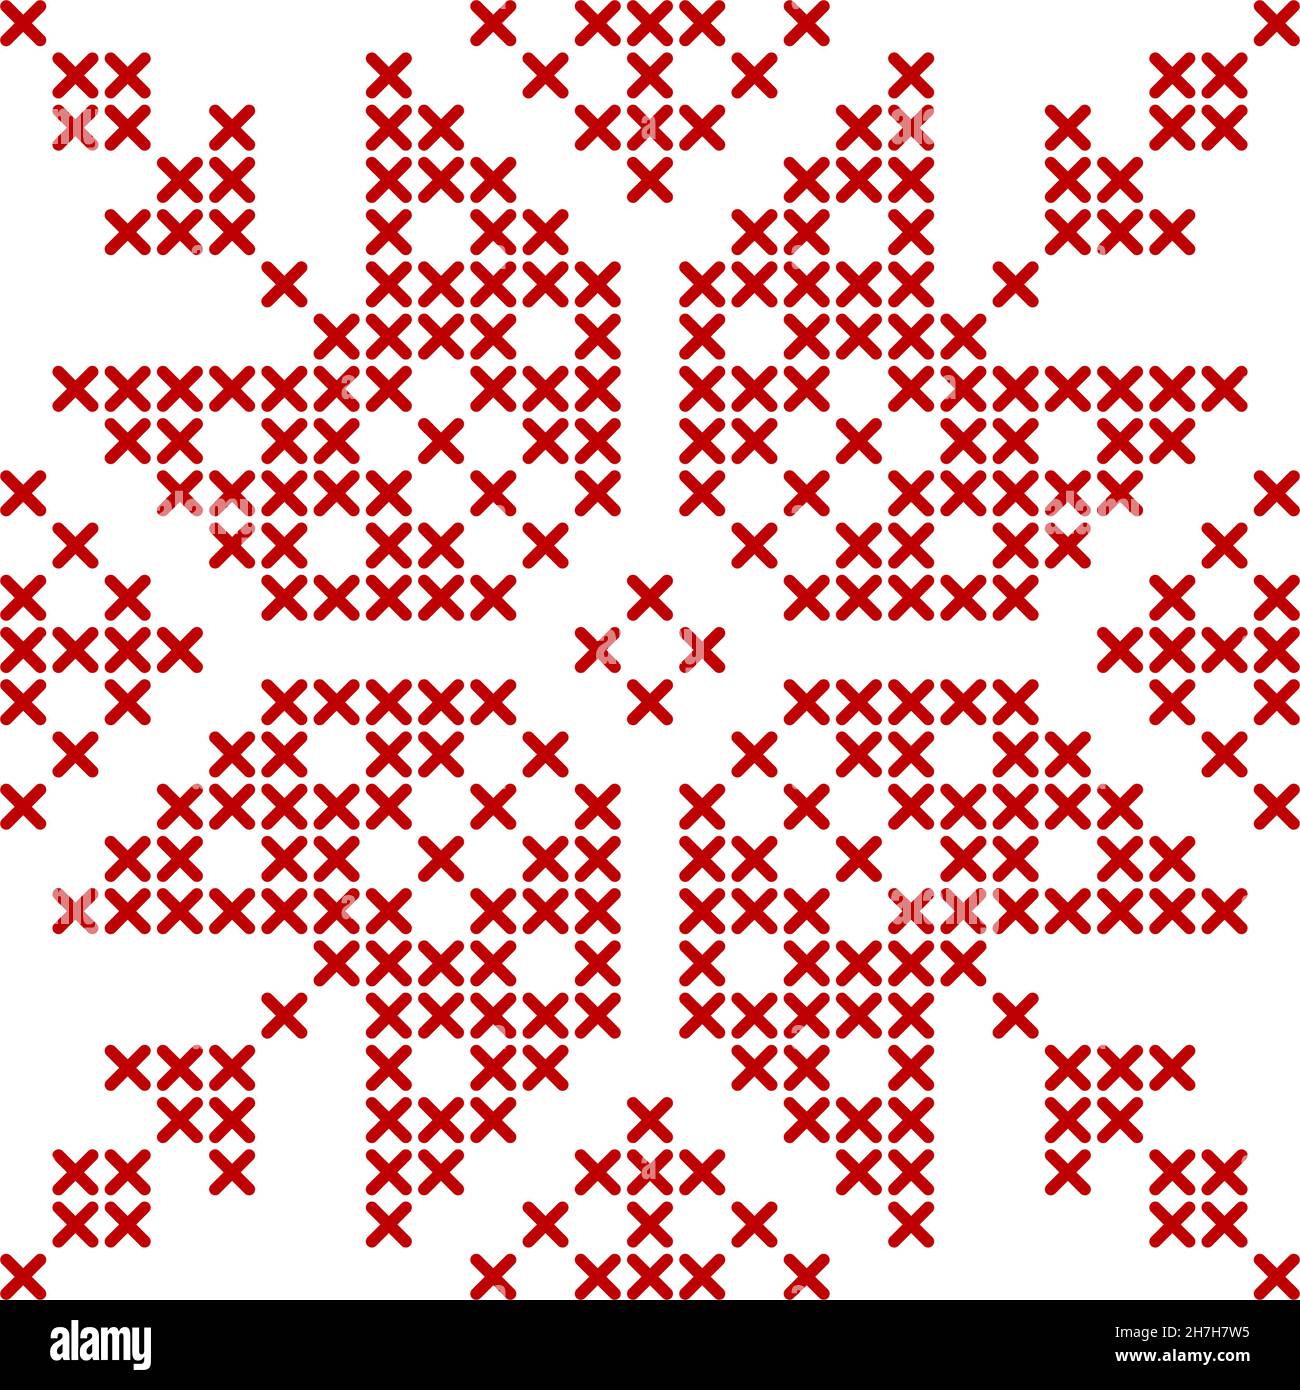 Modello a maglia scandinavo. Ornamento in rosso geometrico per ricami stellari in fiocchi di neve. Perfetto per il design a cuciture incrociate di Natale. Illustratio vettoriale Illustrazione Vettoriale